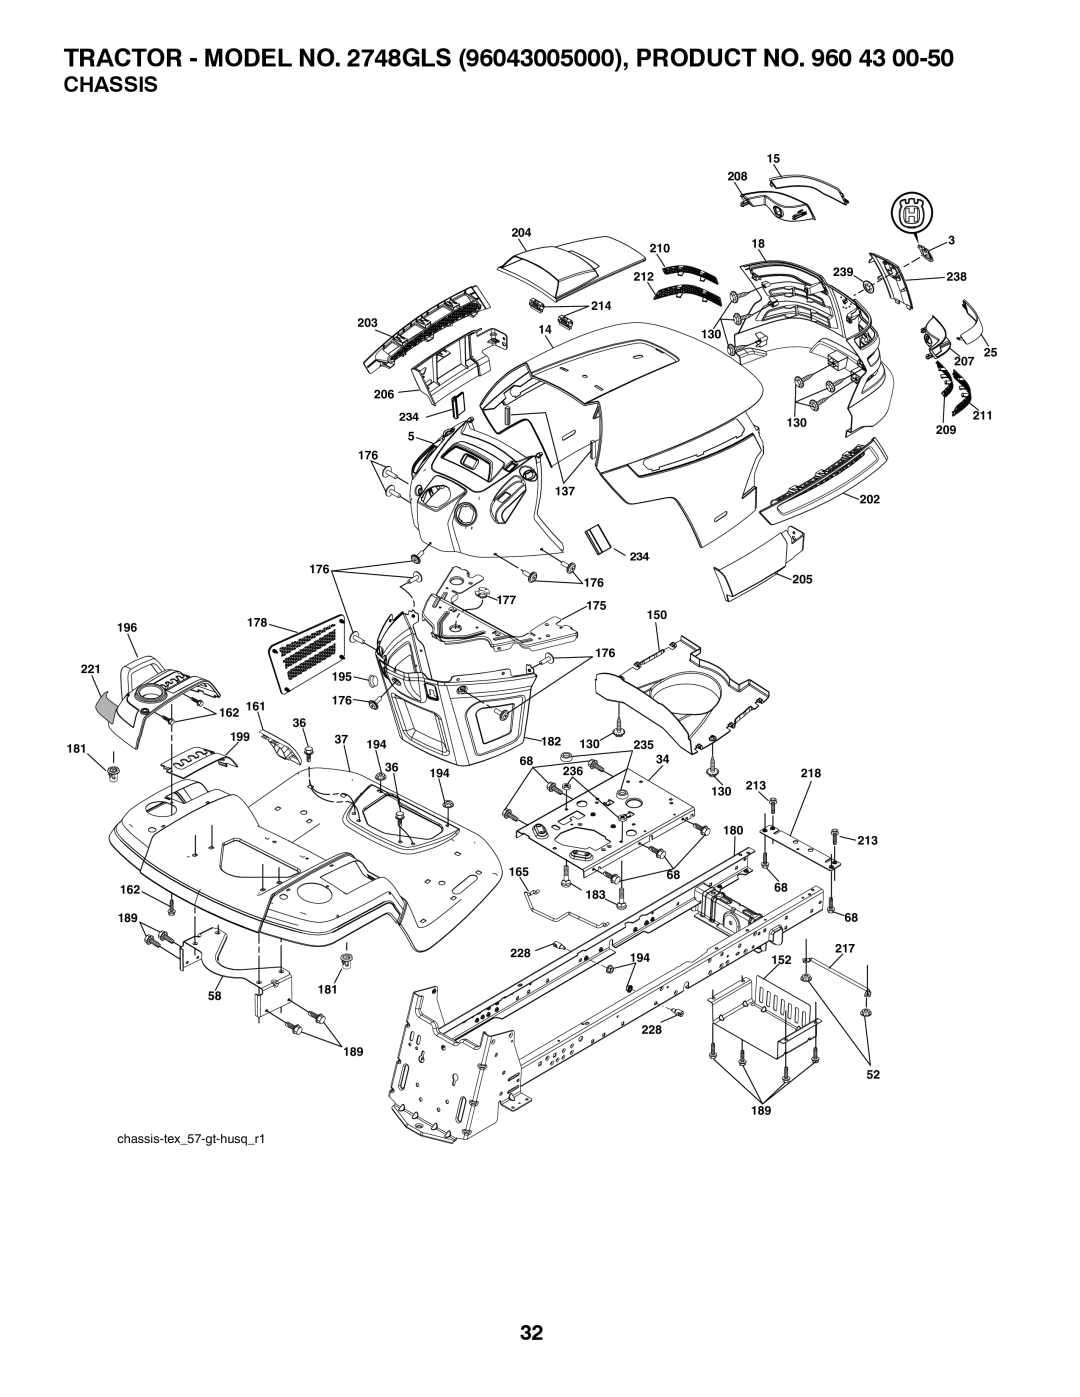 Husqvarna 2748 GLS (CA) manual Chassis, chassis-tex_57-gt-husq_r1 